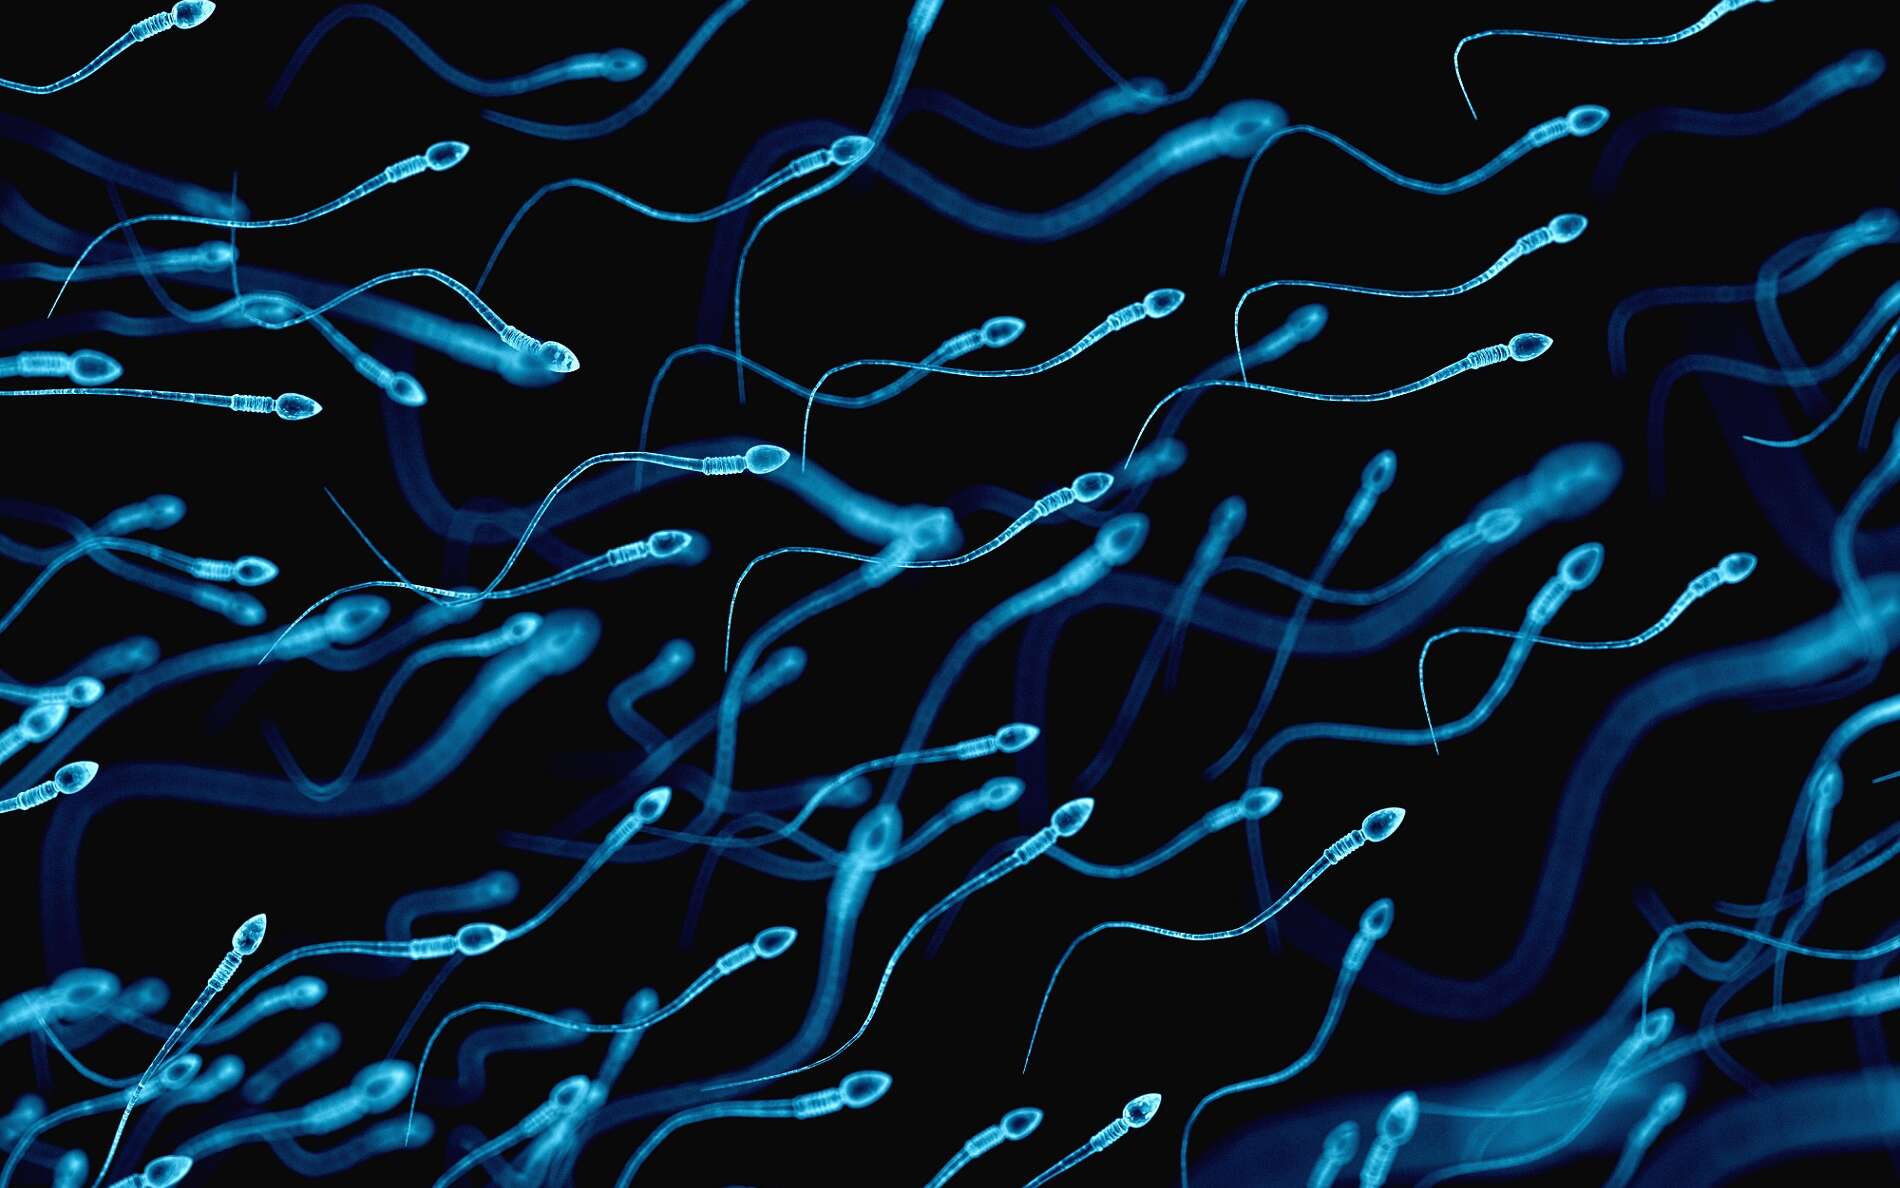 Les spermatides sont les cellules qui se différencient en spermatozoïdes. © Sebastian Kaulitzki, Shutterstock